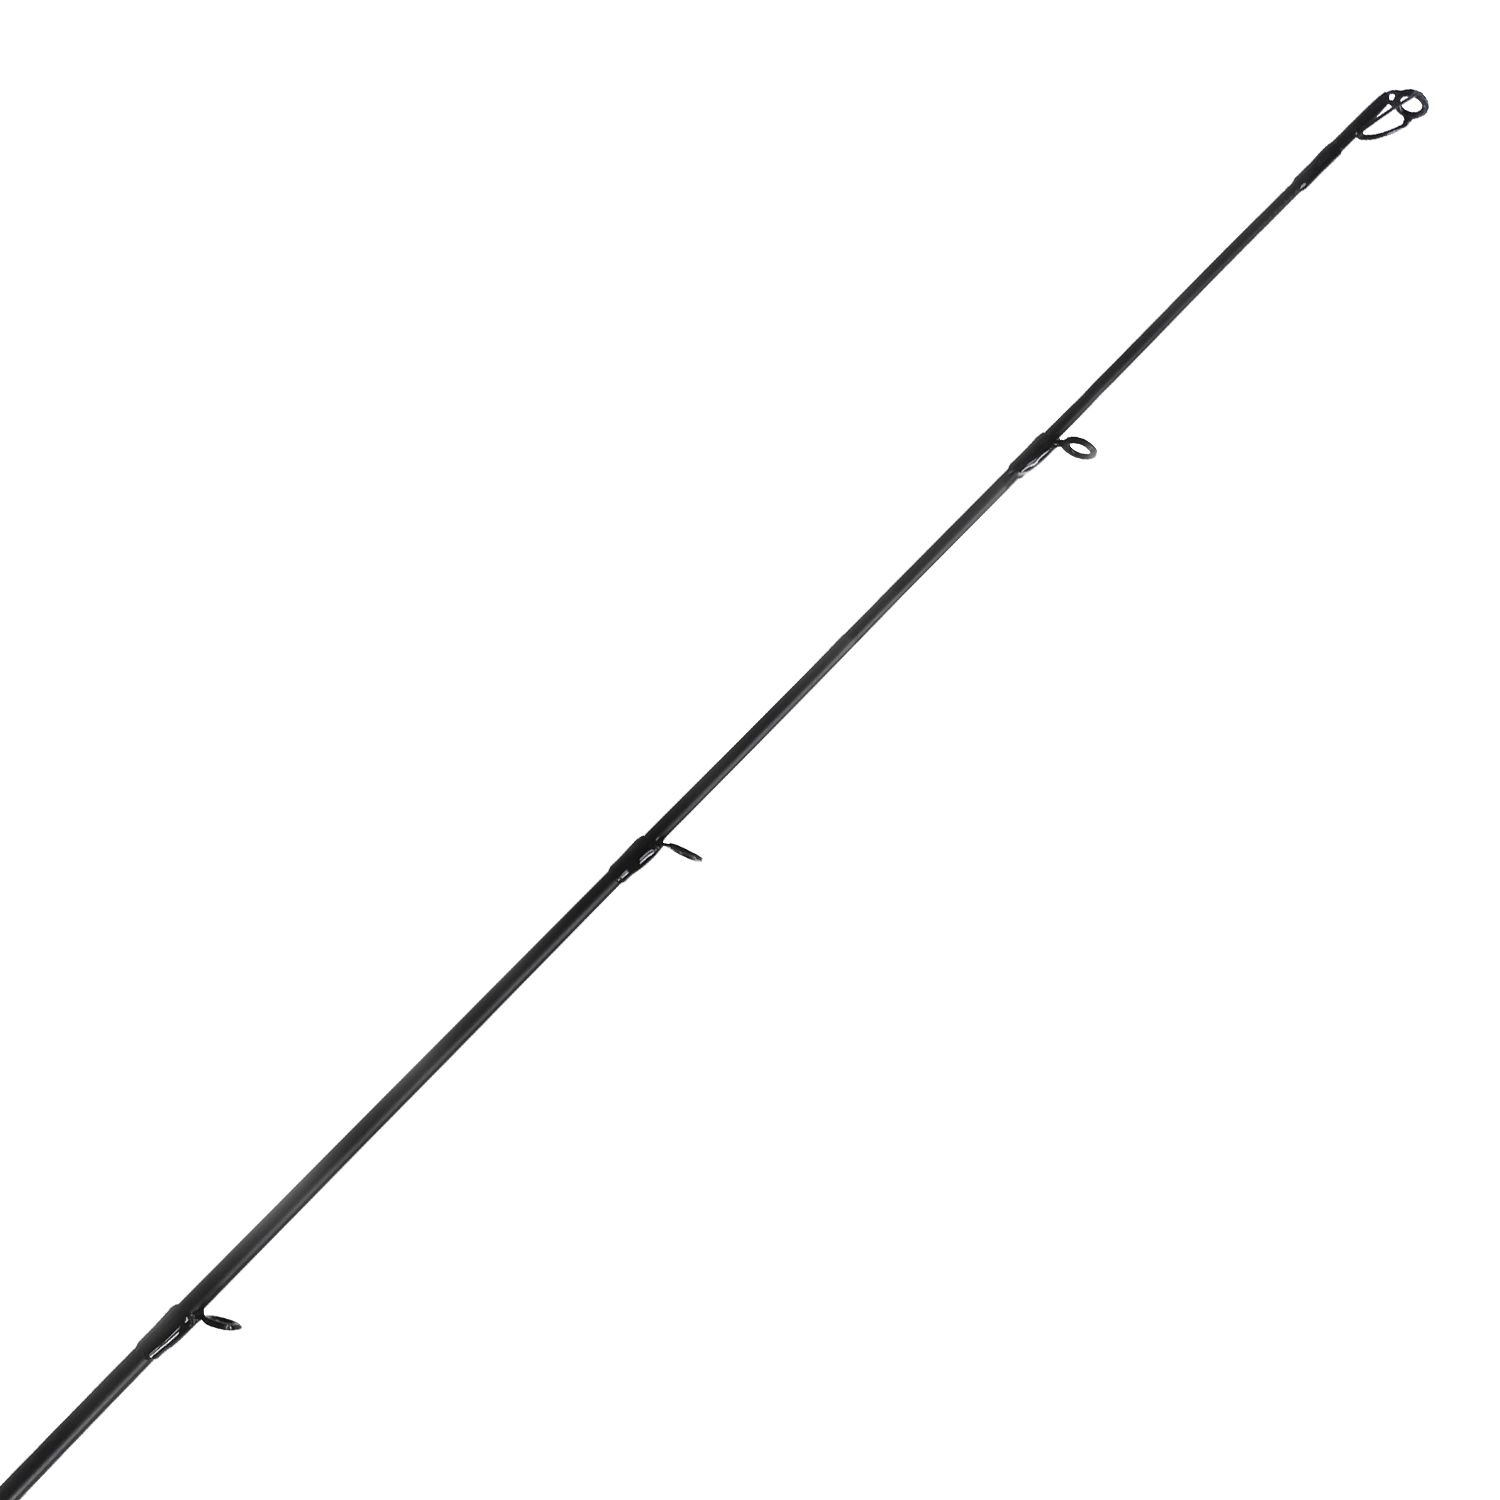 Okuma Stratus VI Spinning Rod